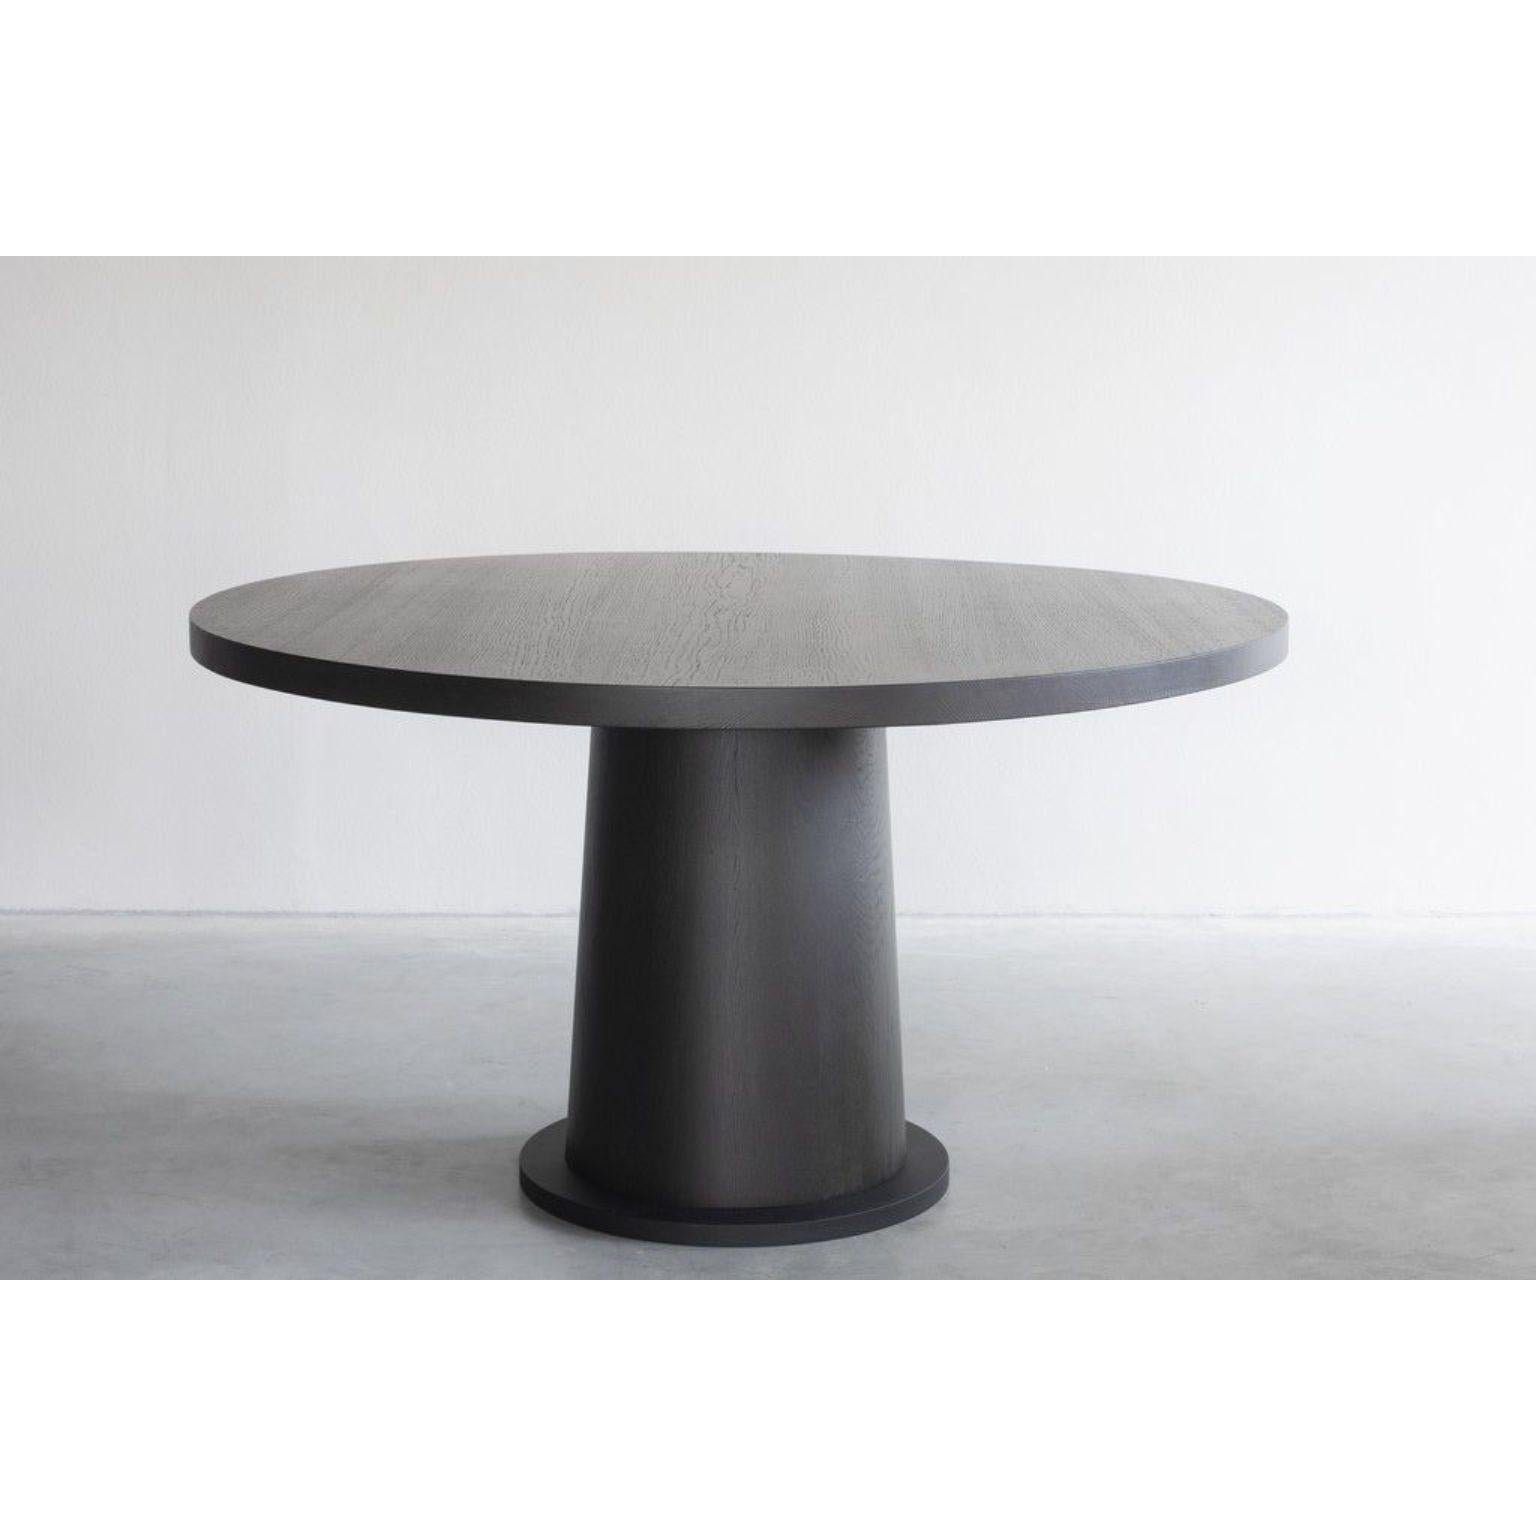 Table de salle à manger Kops ronde par Van Rossum
Dimensions : D147 x L147 x H75 cm
MATERIAL : Chêne, Steele.

Le bois est disponible dans toutes les couleurs standard de Van Rossum, ou dans une finition assortie à l'échantillon du